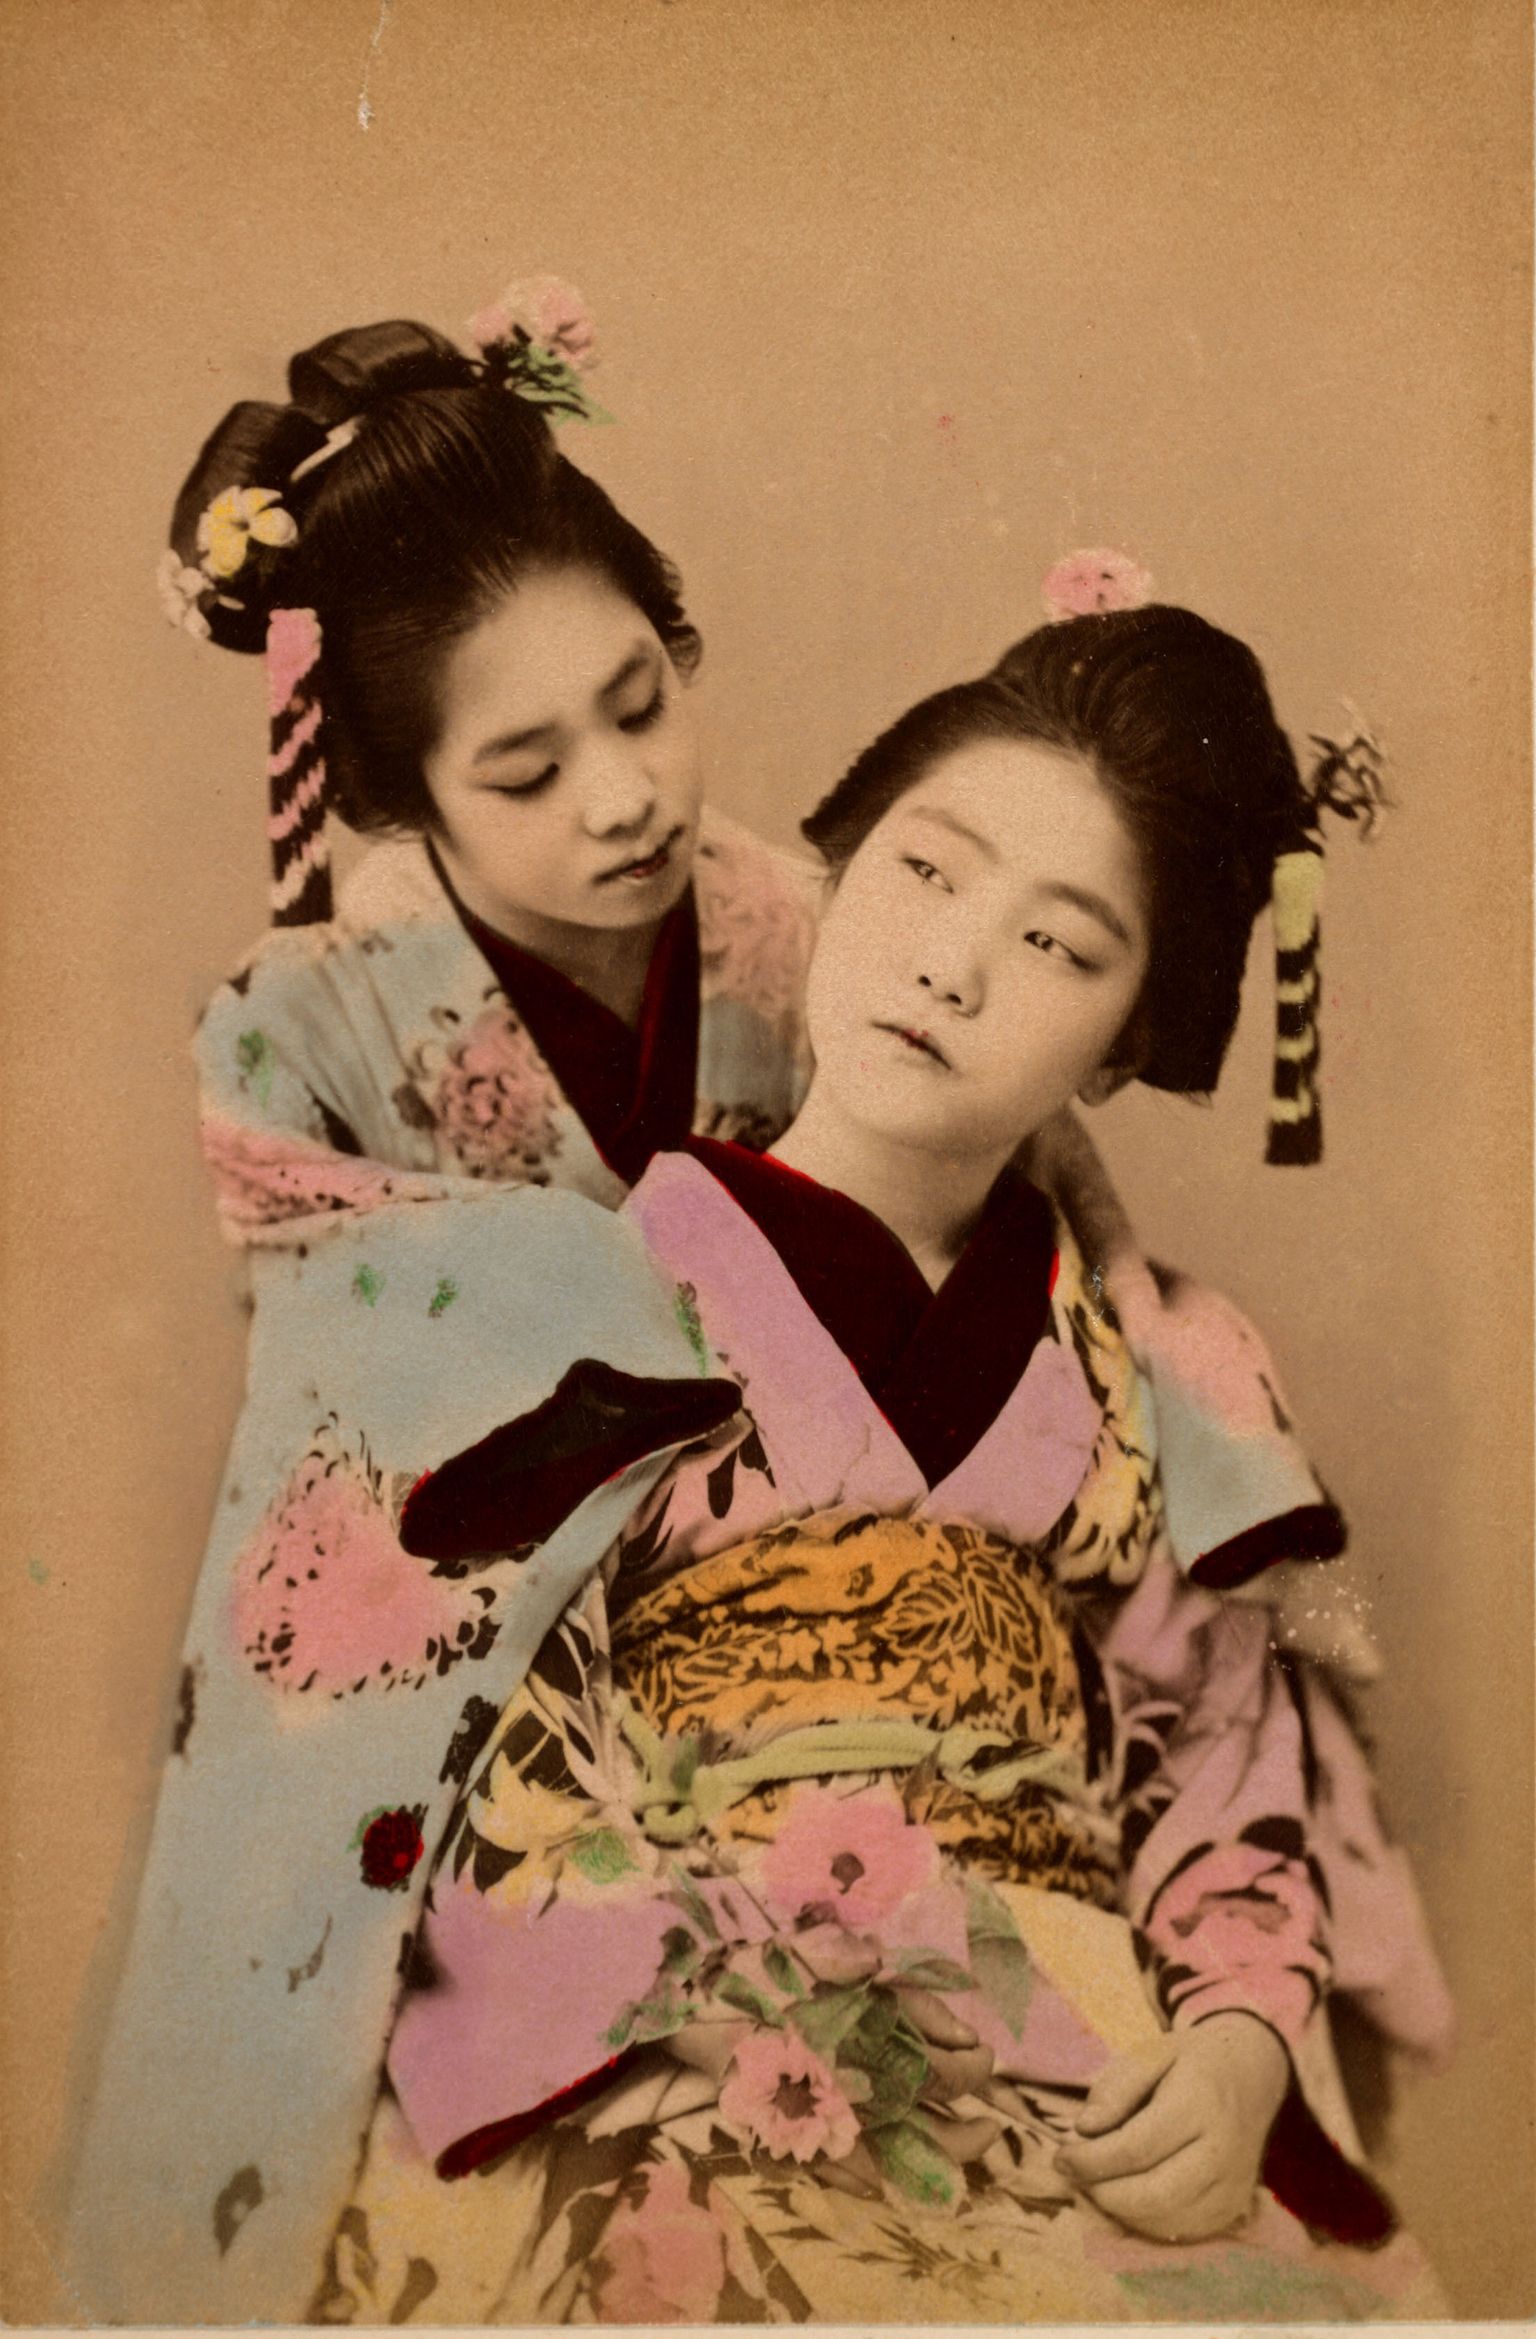 Kaks geišat. Koloriseeritud foto aastast 1890.